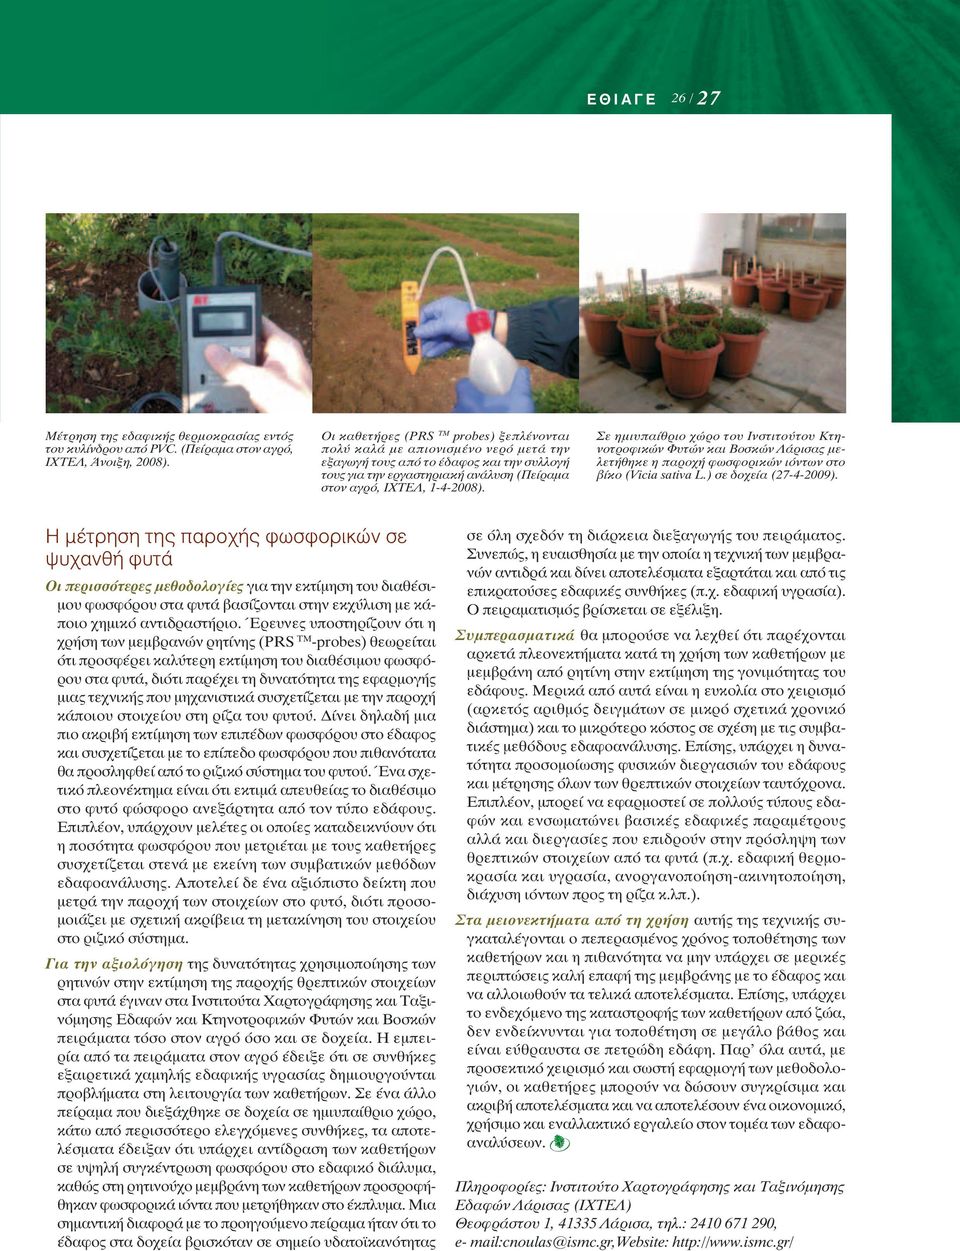 Σε ημιυπαίθριο χώρο του Ινστιτούτου Κτηνοτροφικών Φυτών και Βοσκών Λάρισας μελετήθηκε η παροχή φωσφορικών ιόντων στο βίκο (Vicia sativa L.) σε δοχεία (27-4-2009).